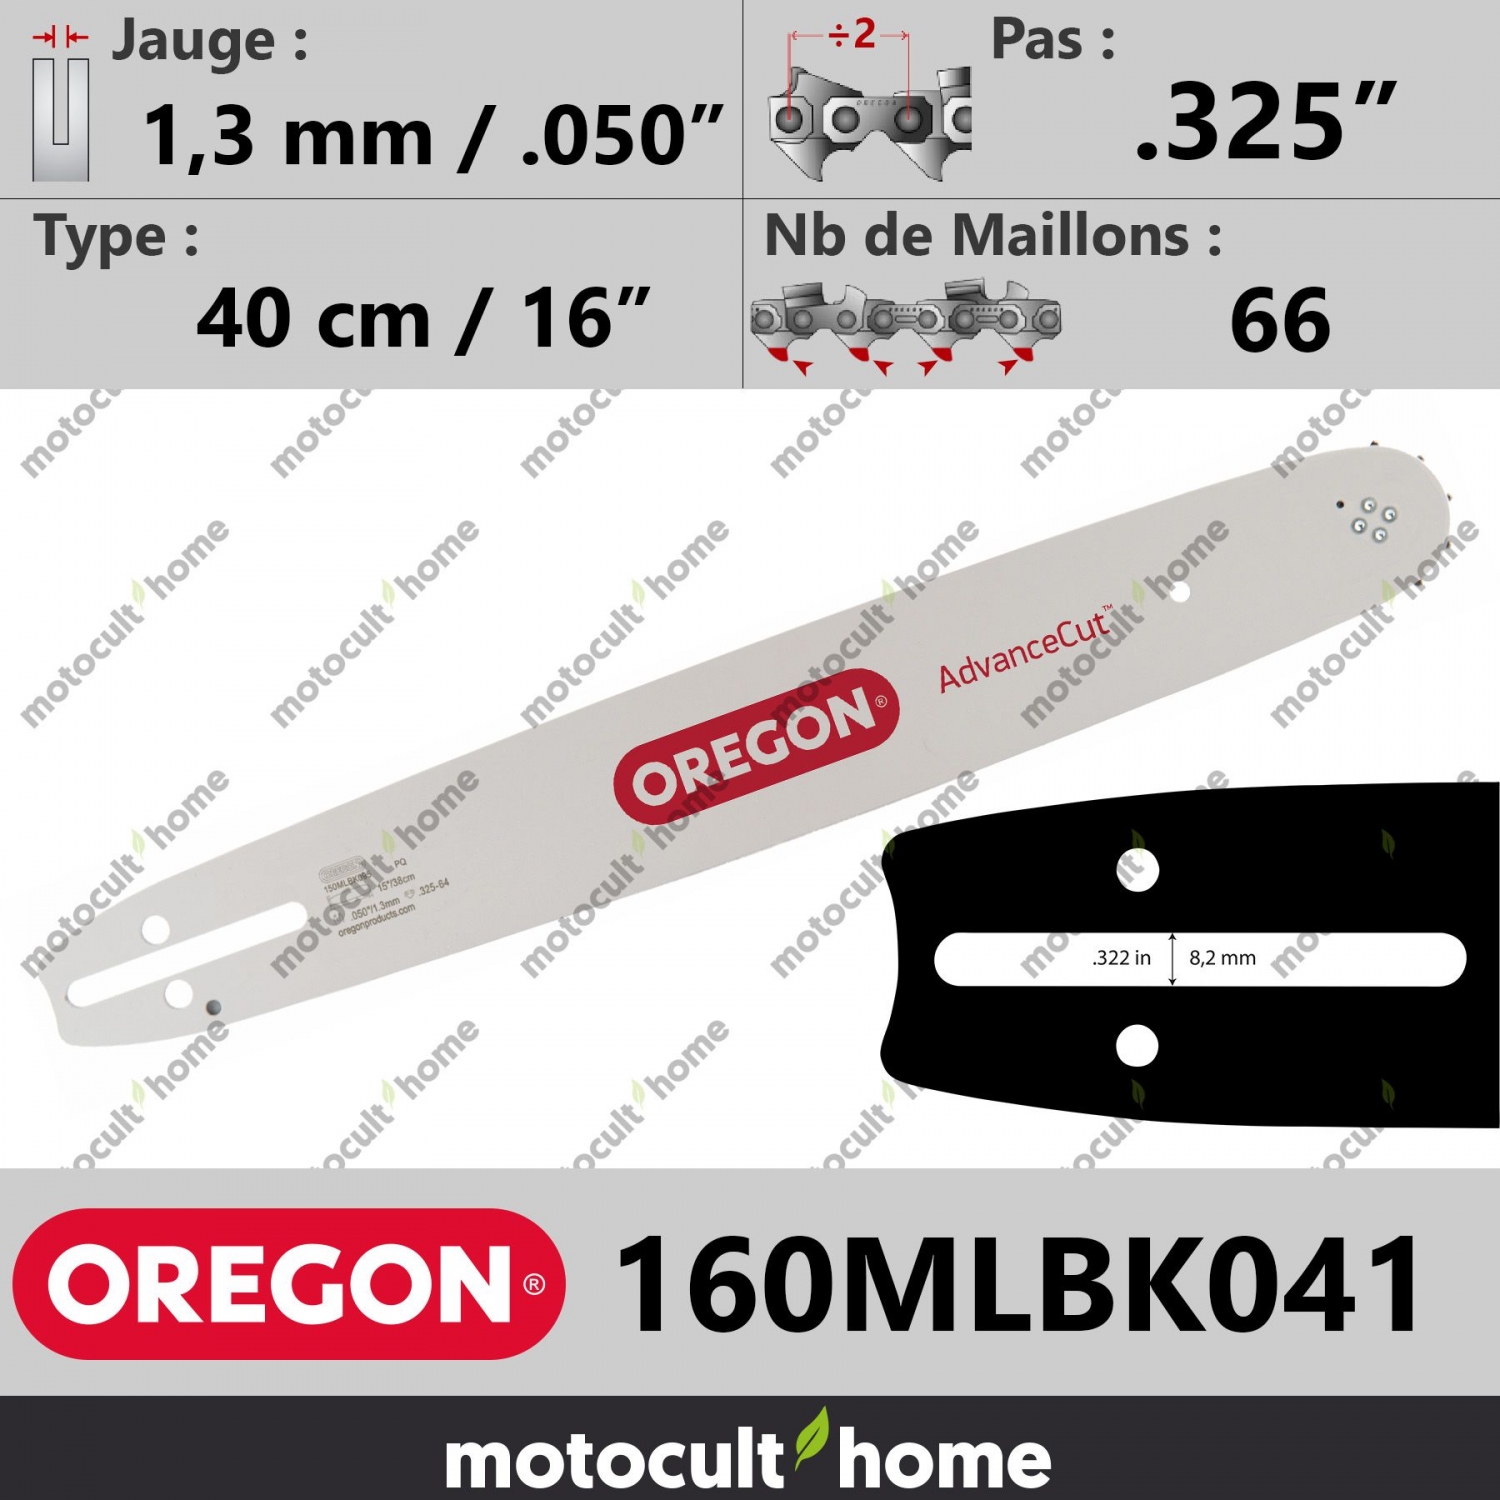 Guide Oregon 180MLBK041 pour tronçonneuse 45 cm ou 18 pouces